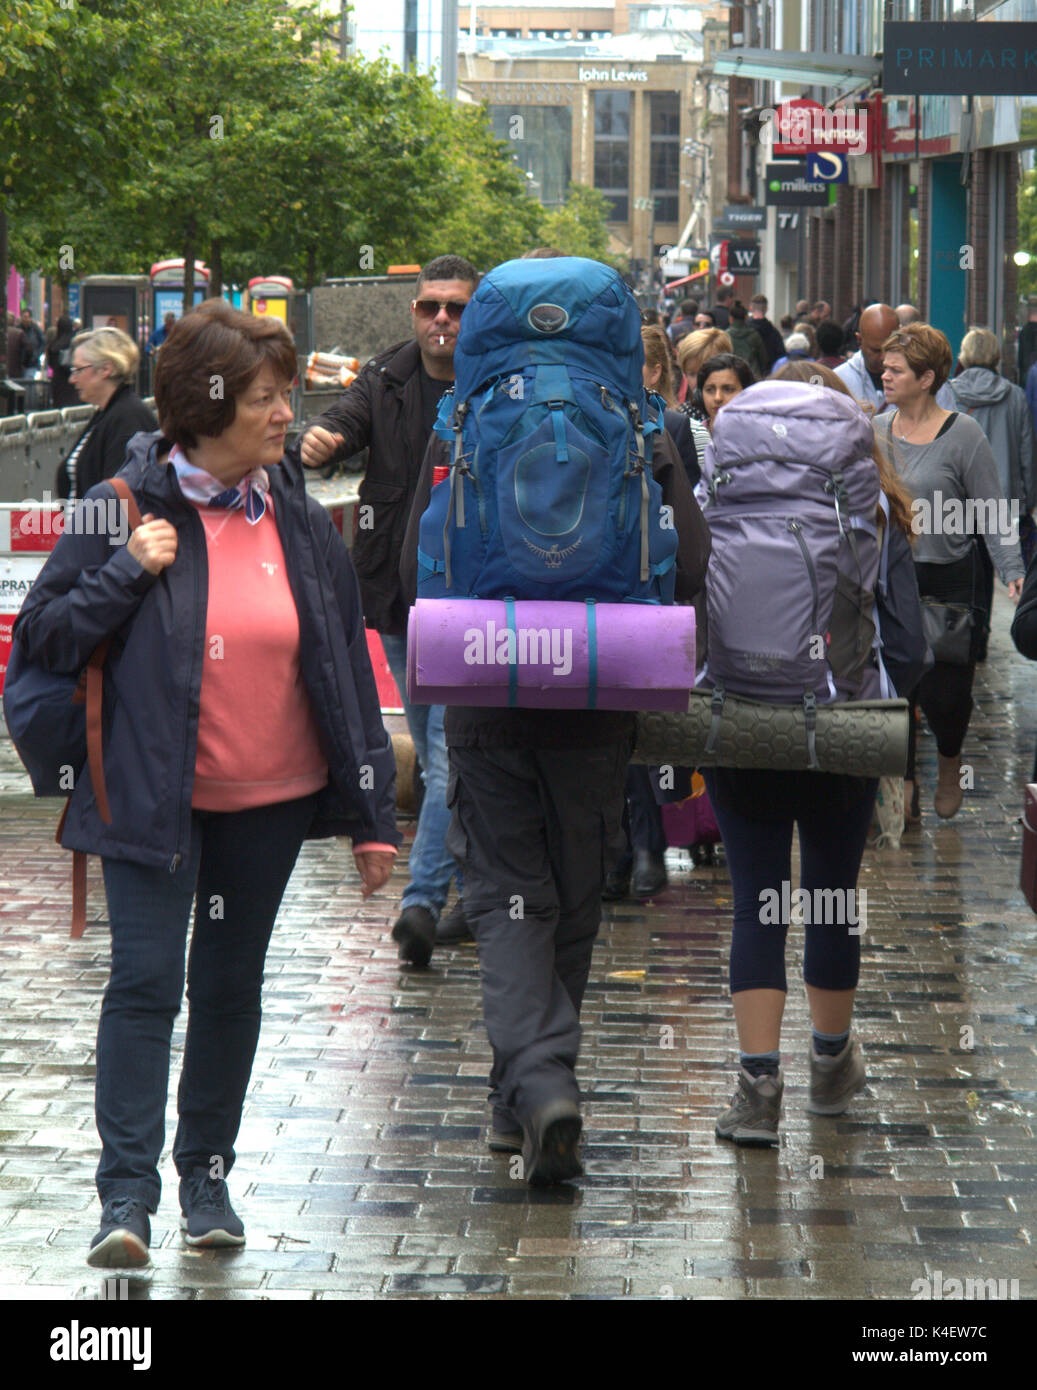 Scène de rue de glasgow backpackers sur une rue bondée Banque D'Images